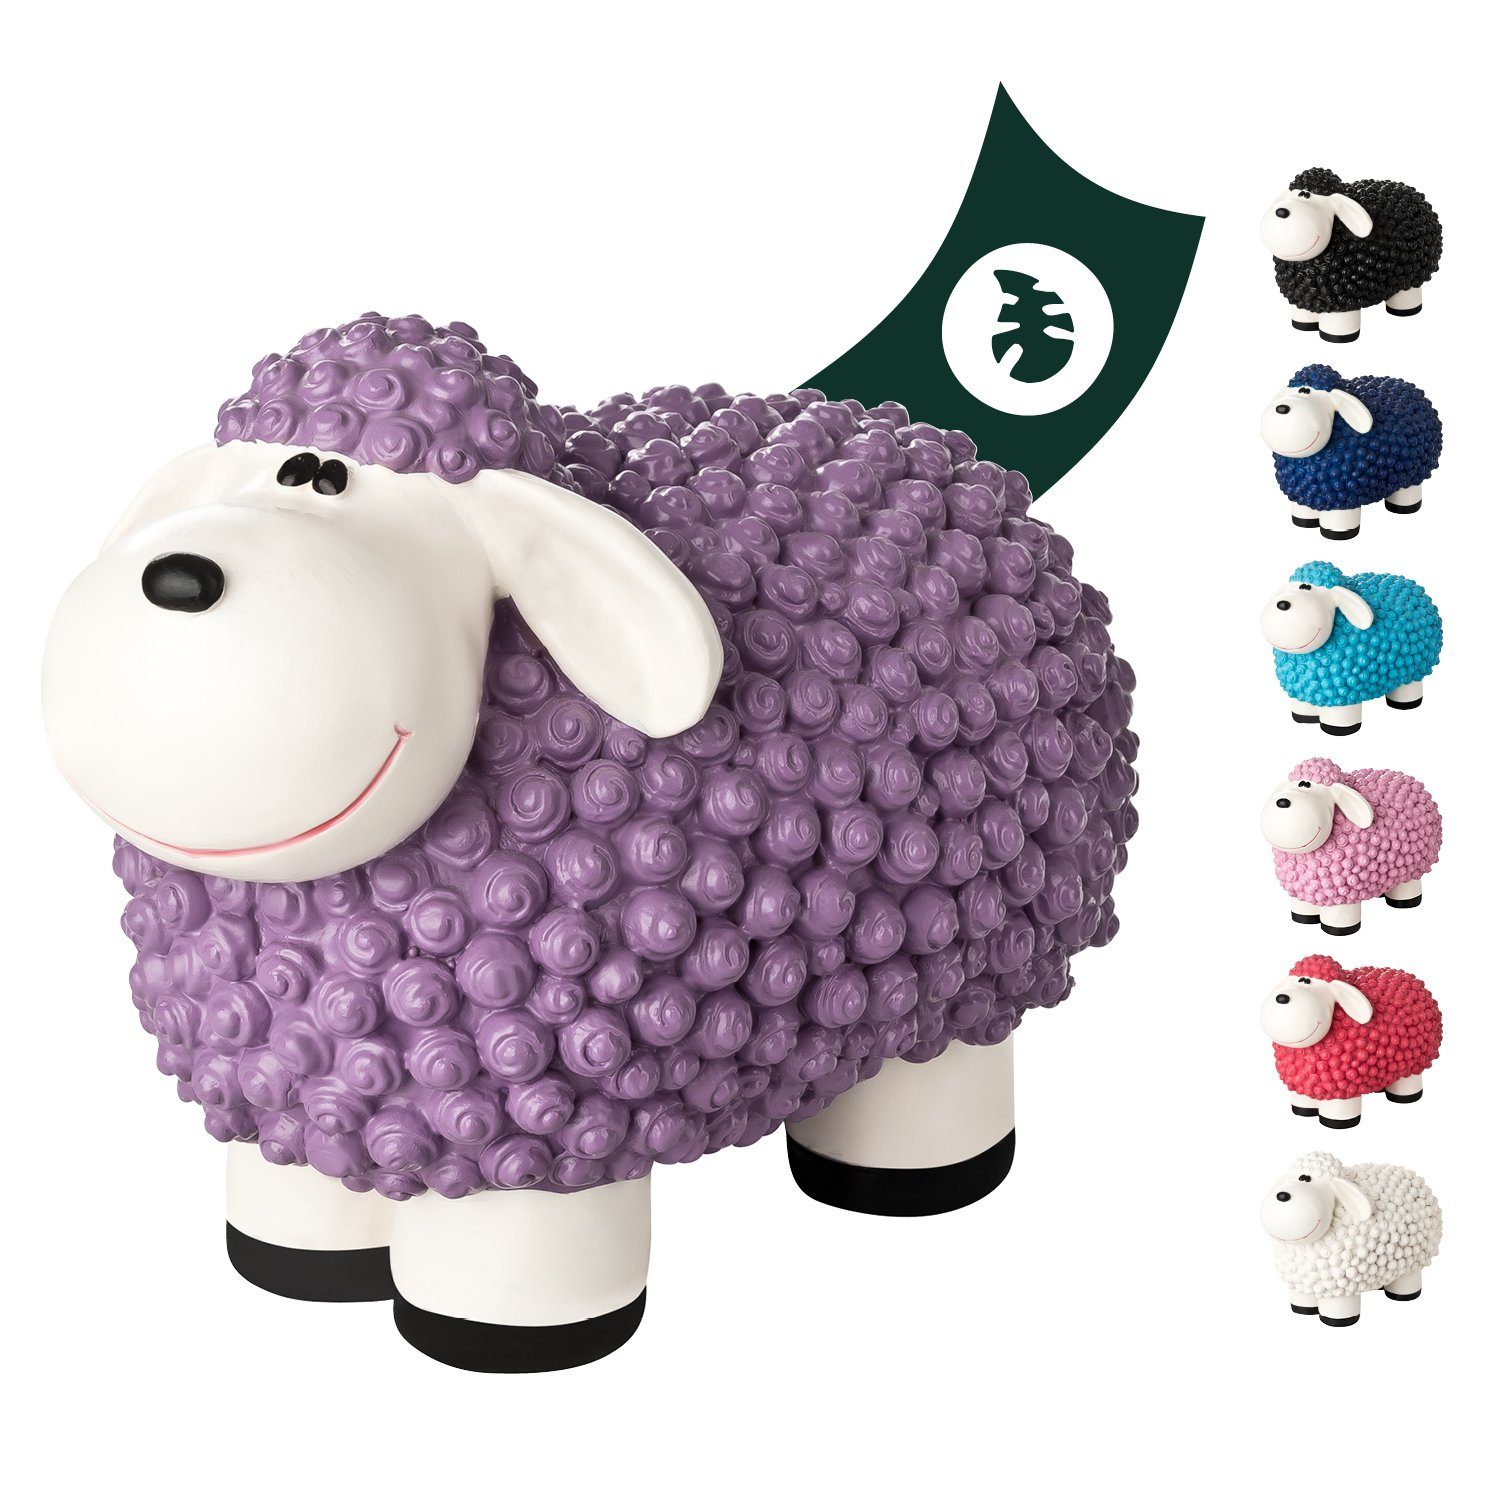 VERDOBA Gartenfigur Gartendeko Mini Schaf - Wetterfeste Gartenfigur - Deko Schaf für Außen, Polyresin Pastell violett